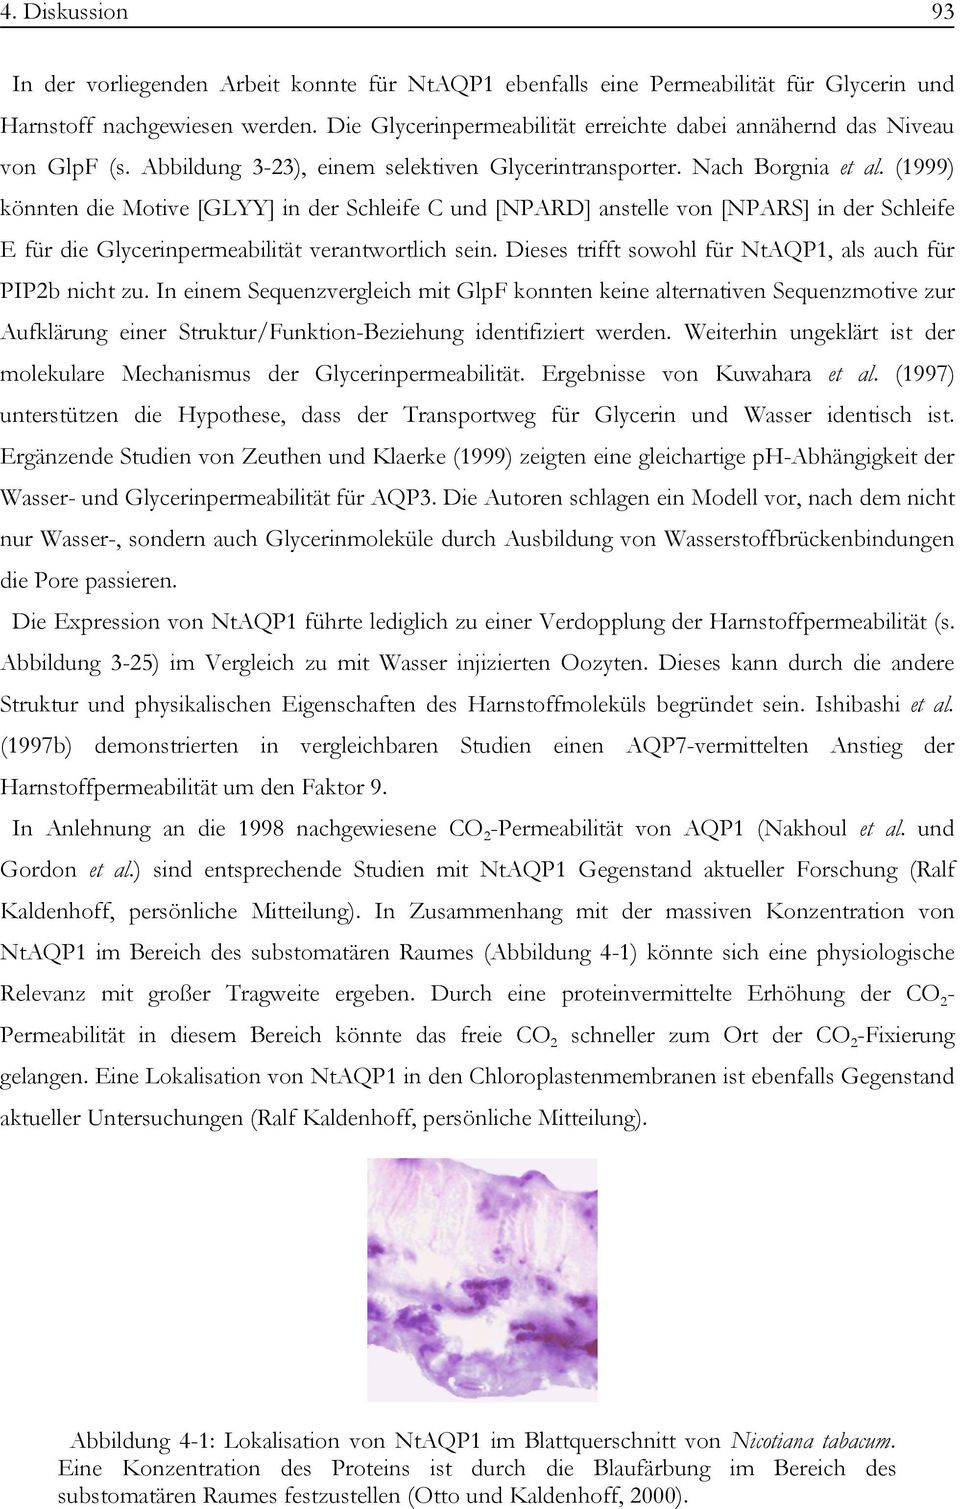 (1999) könnten die Motive [GLYY] in der Schleife C und [NPARD] anstelle von [NPARS] in der Schleife E für die Glycerinpermeabilität verantwortlich sein.